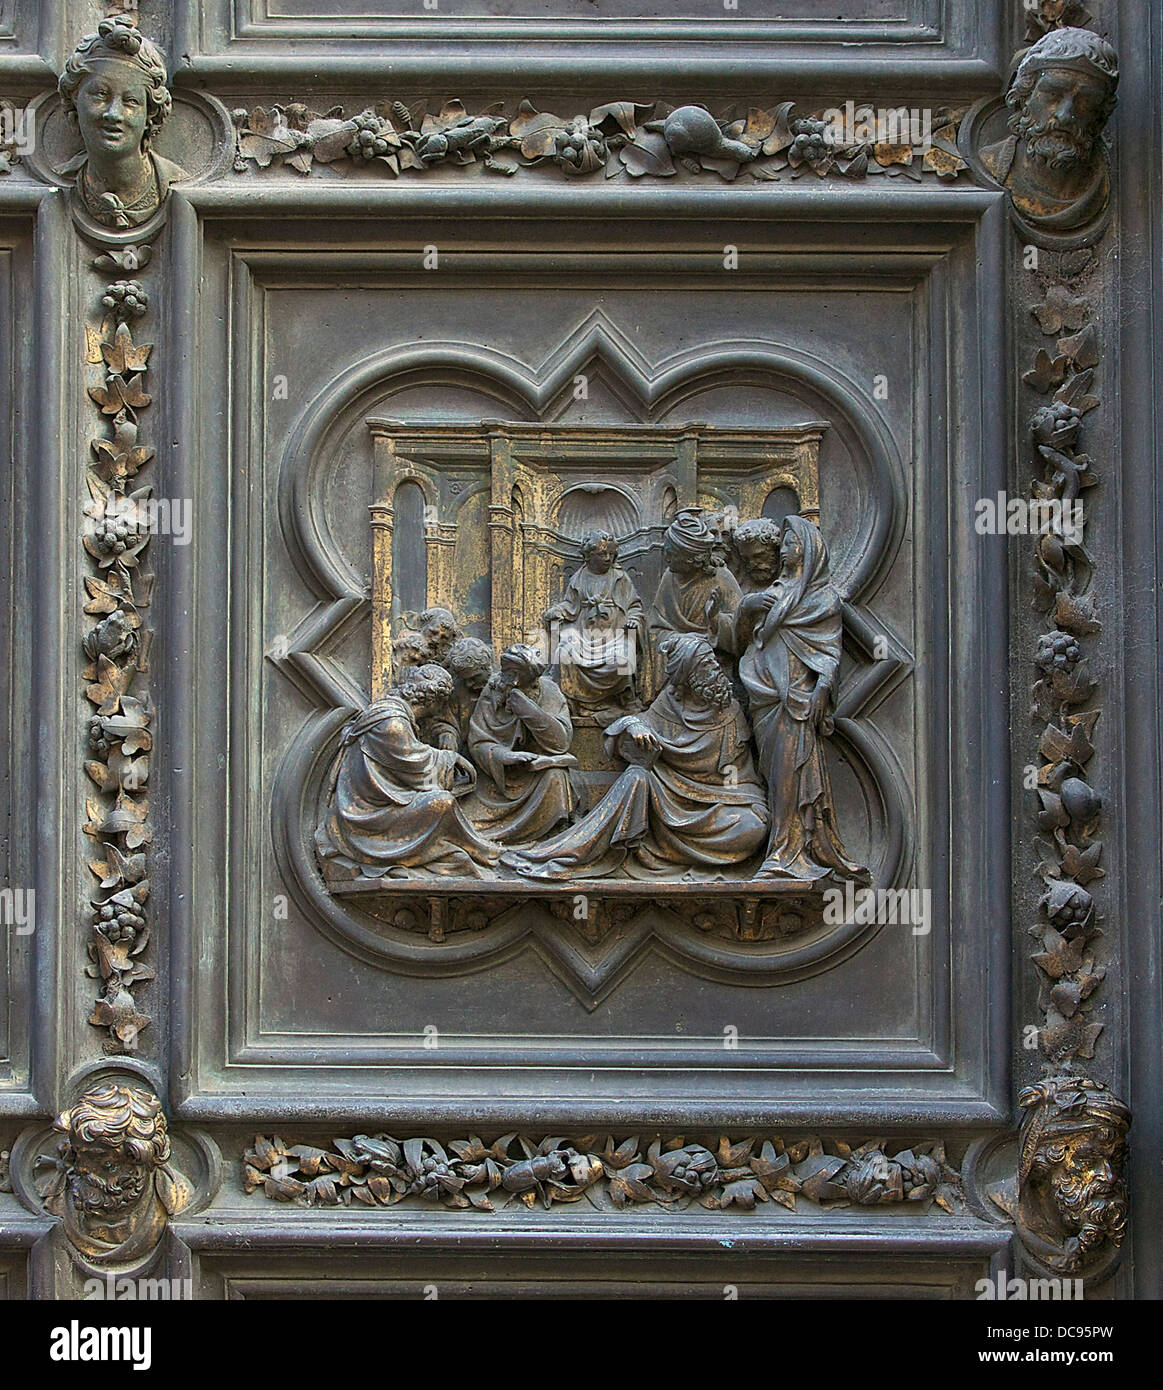 Gesù fra i dottori, targa di bronzo della Porta Nord del Battistero di Firenze, Italia. Foto Stock